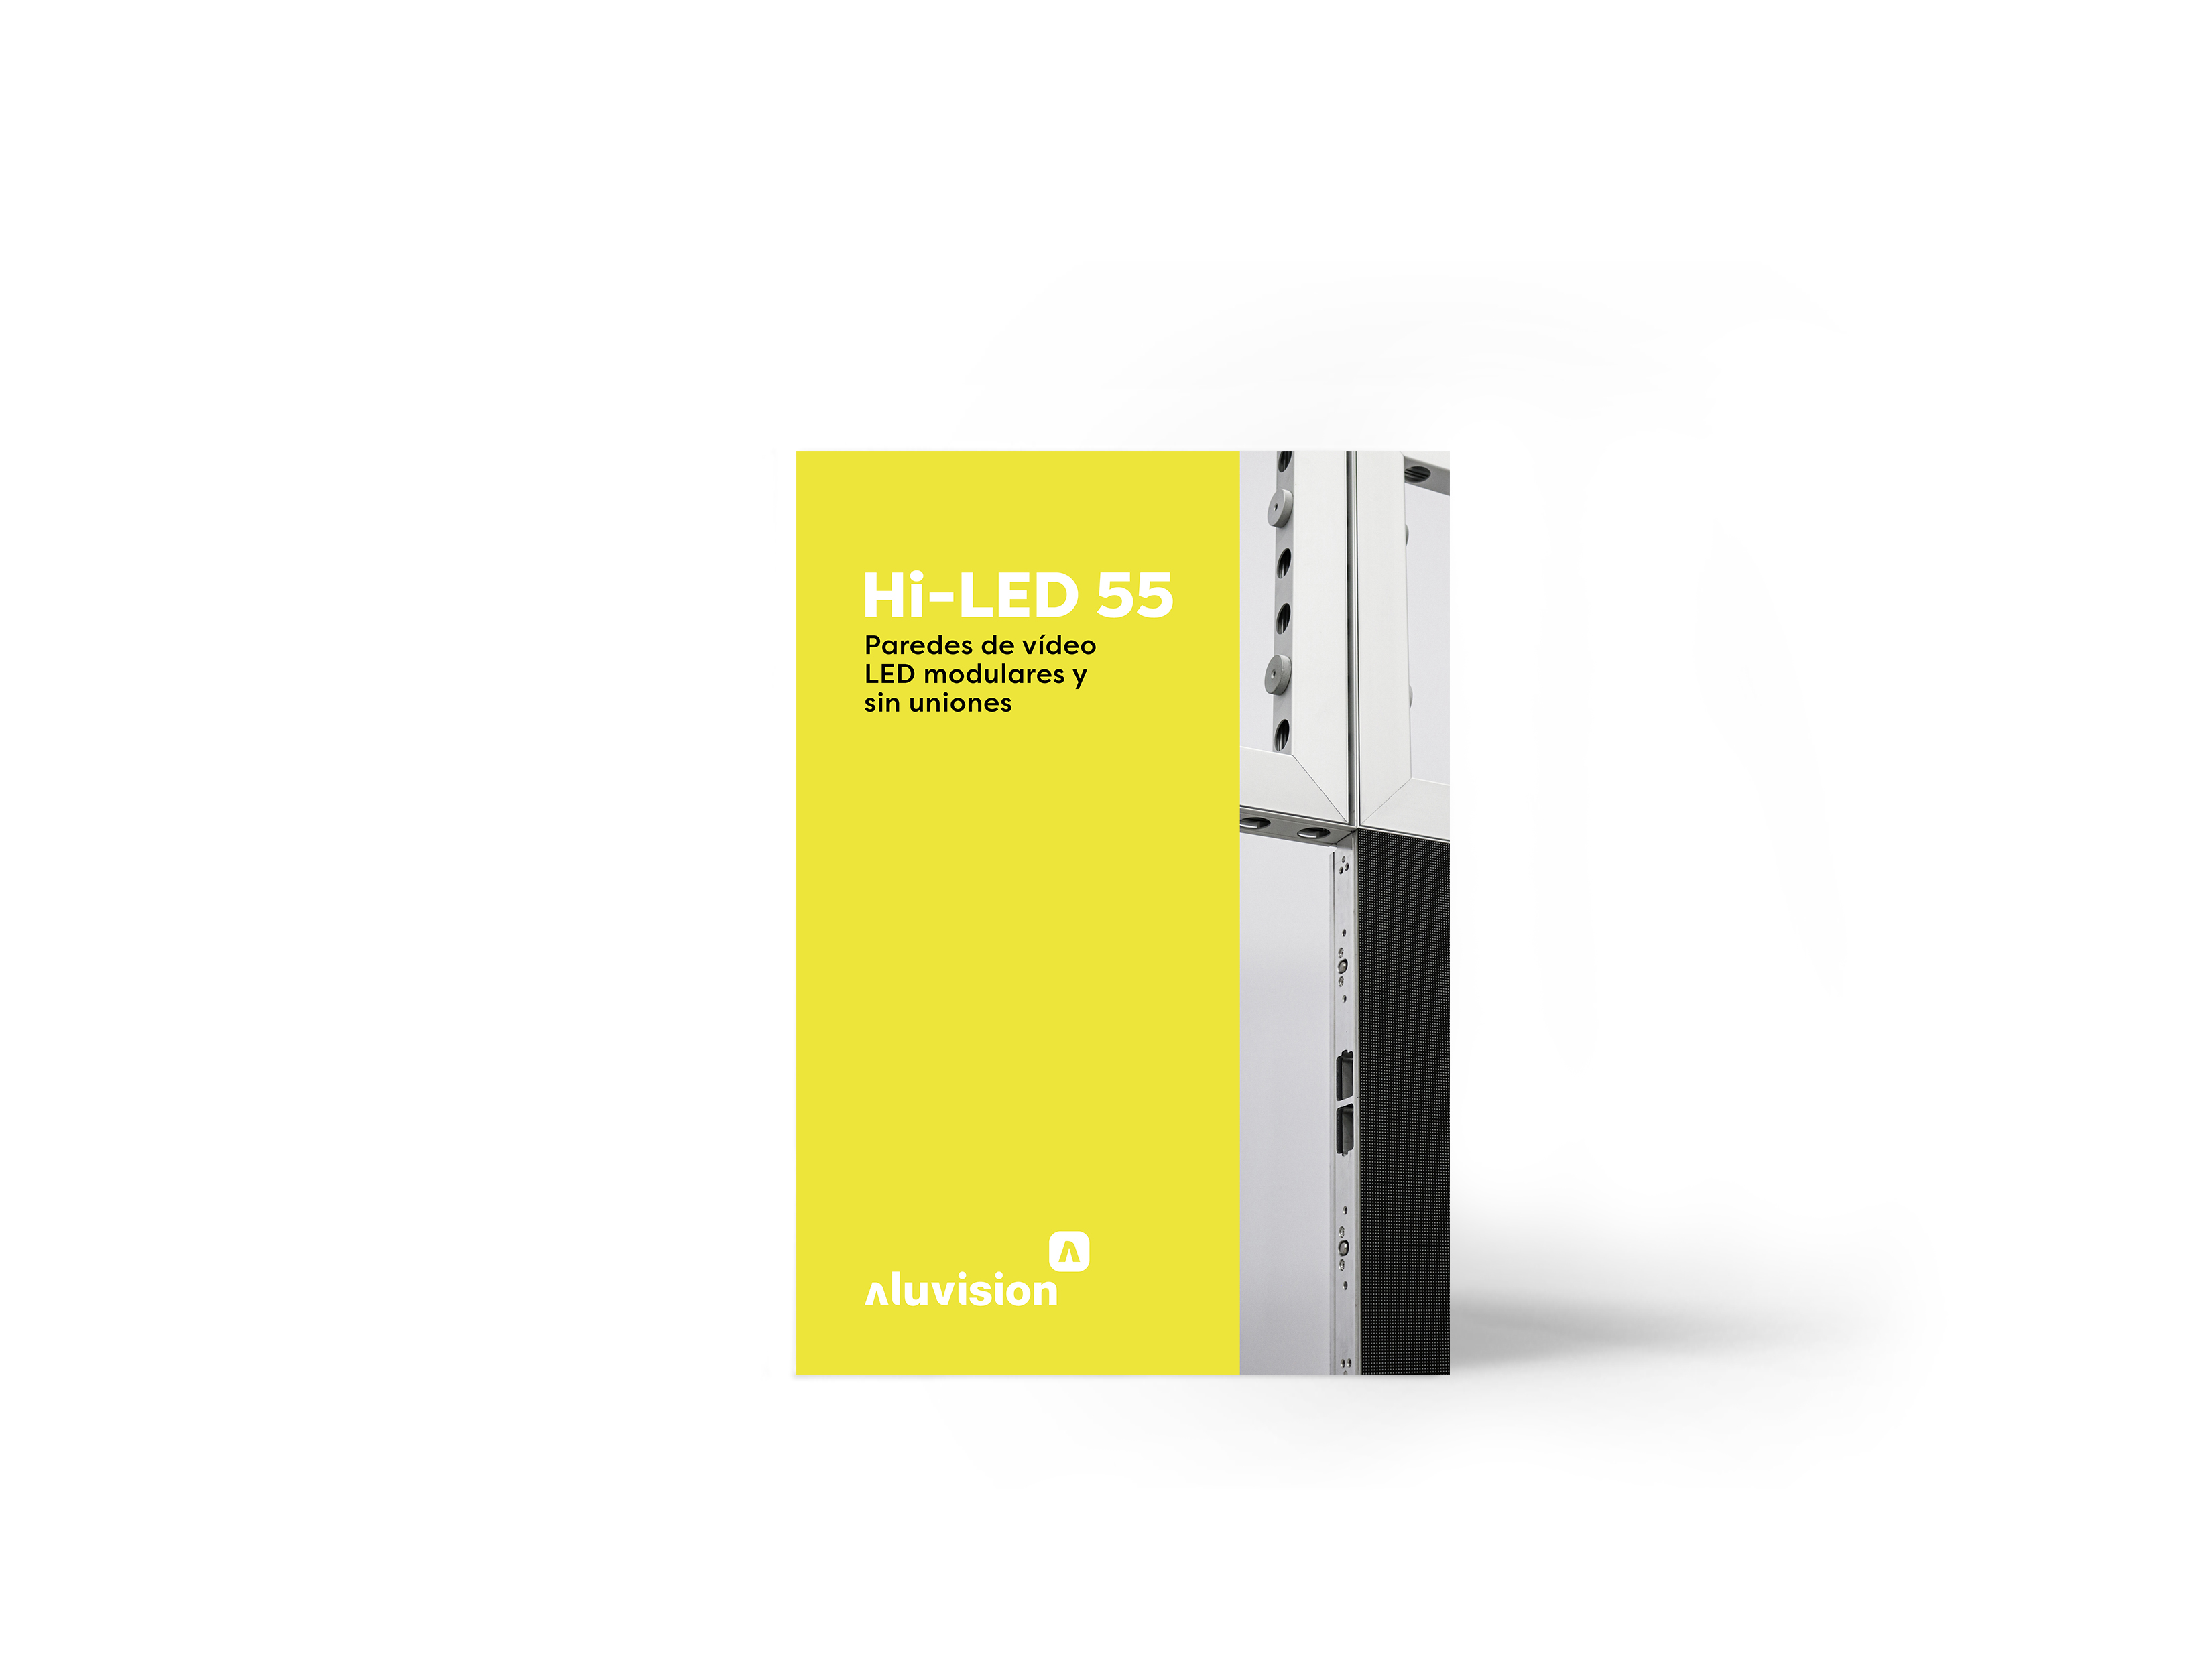 Hi-LED 55 brochure_ES